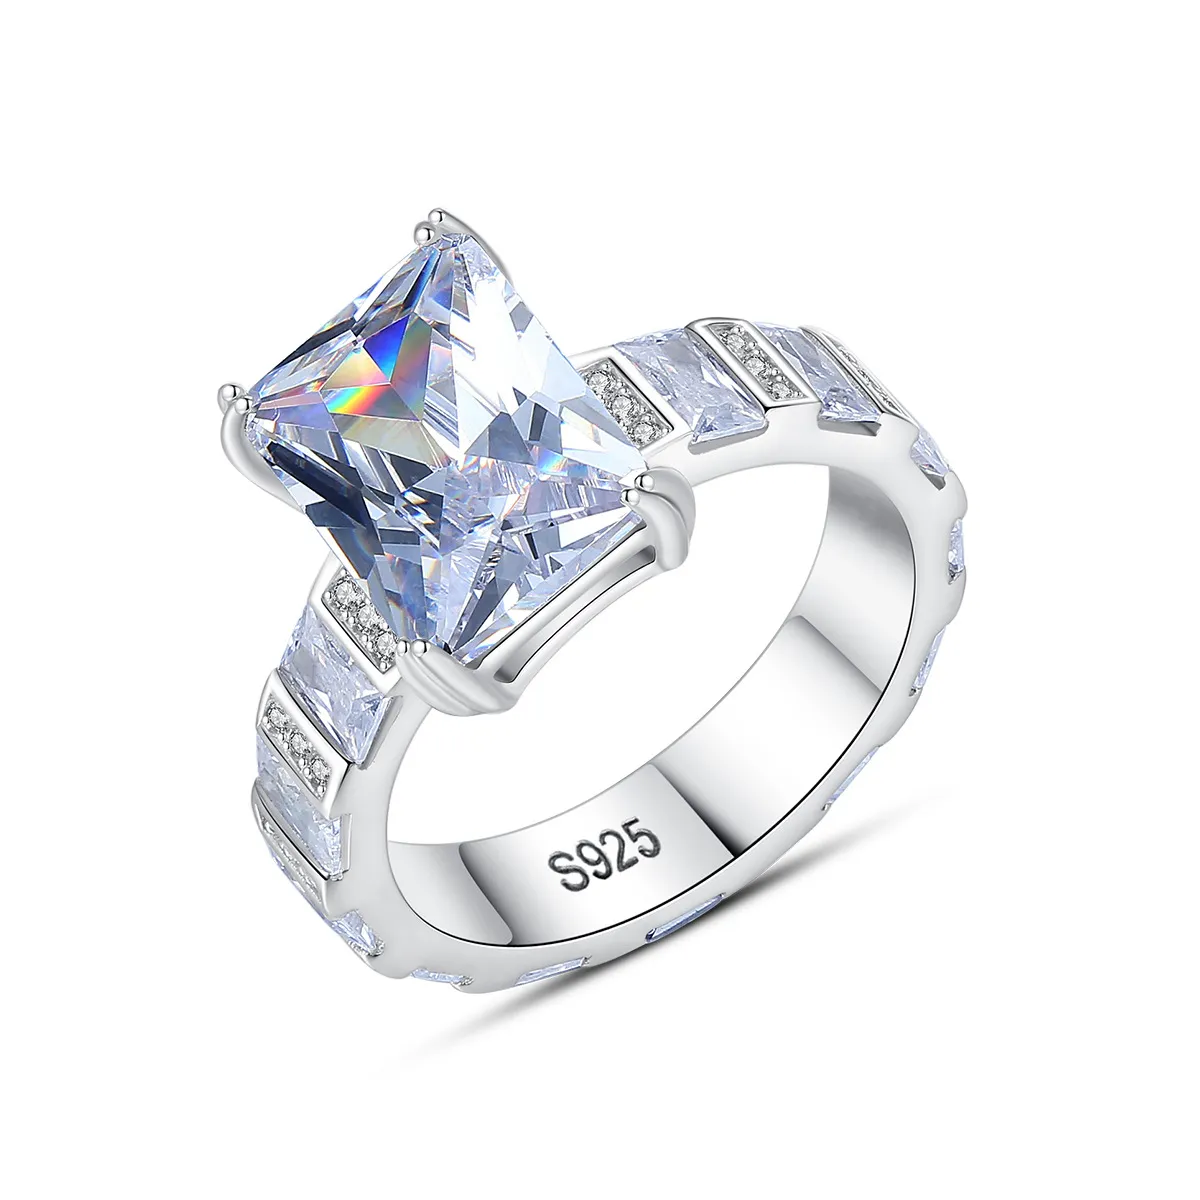 Neue S925 Sterling Silber Ring Marke AAA Zirkon Full Diamond Ring Luxus High -End -Ring Europäische und amerikanische heiße Mode Frauen Ring Valentinstag Muttertagsgeschenk SPC